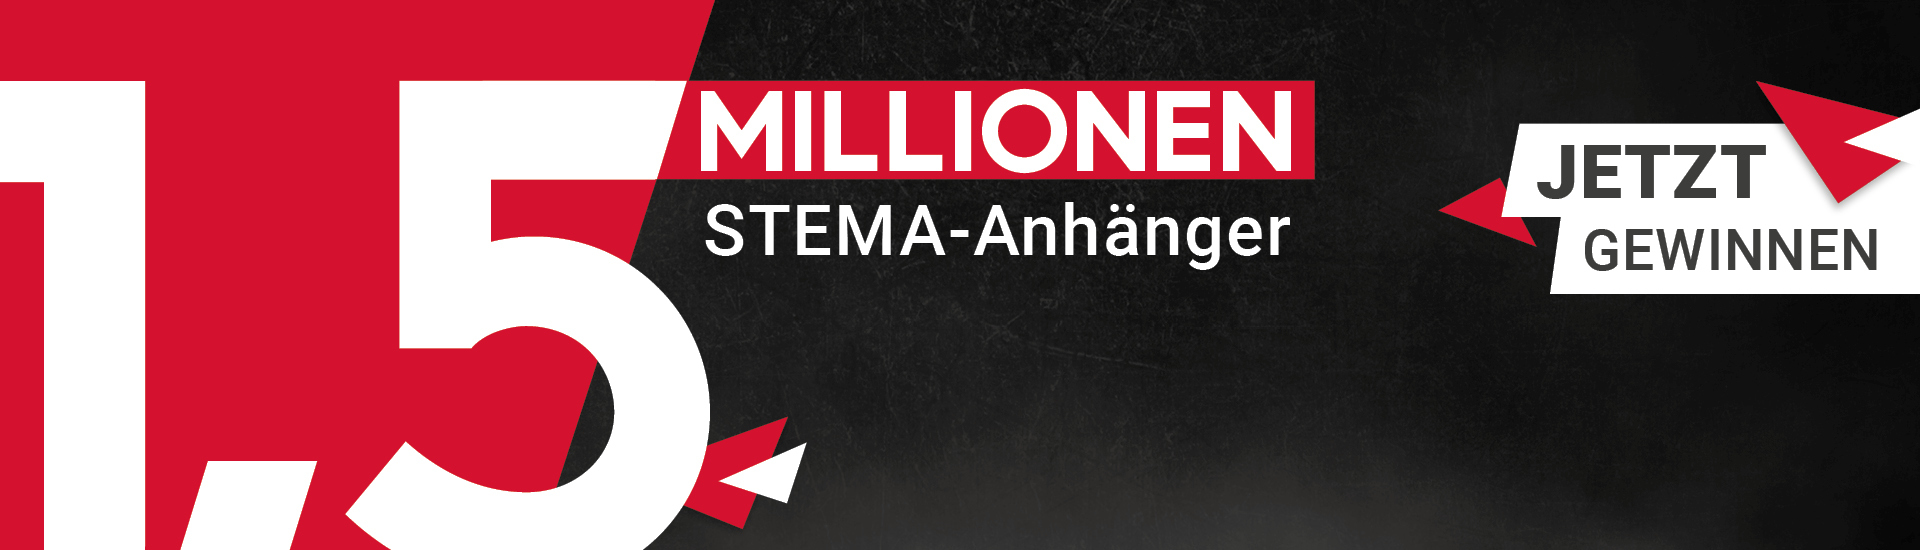 1,5 Millionen STEMA-Anhänger – Jetzt gewinnen